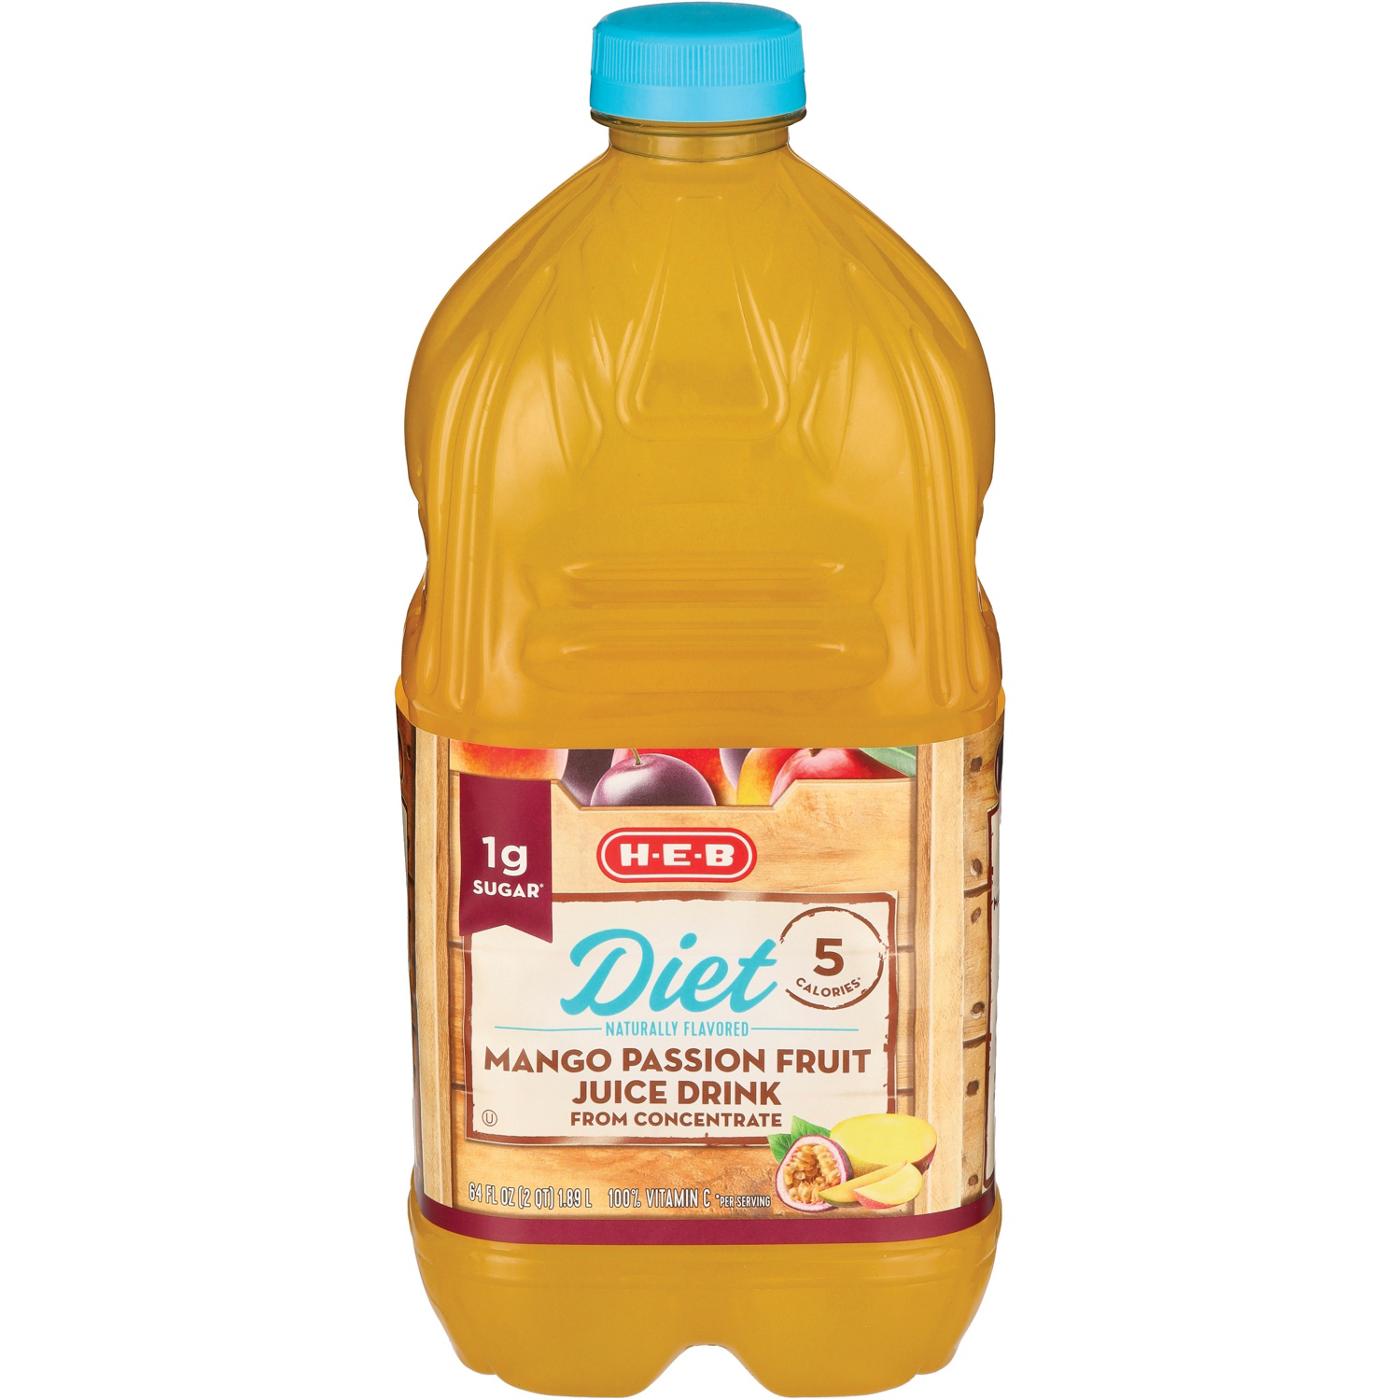 H-E-B Diet Mango Passion Fruit Juice; image 2 of 2